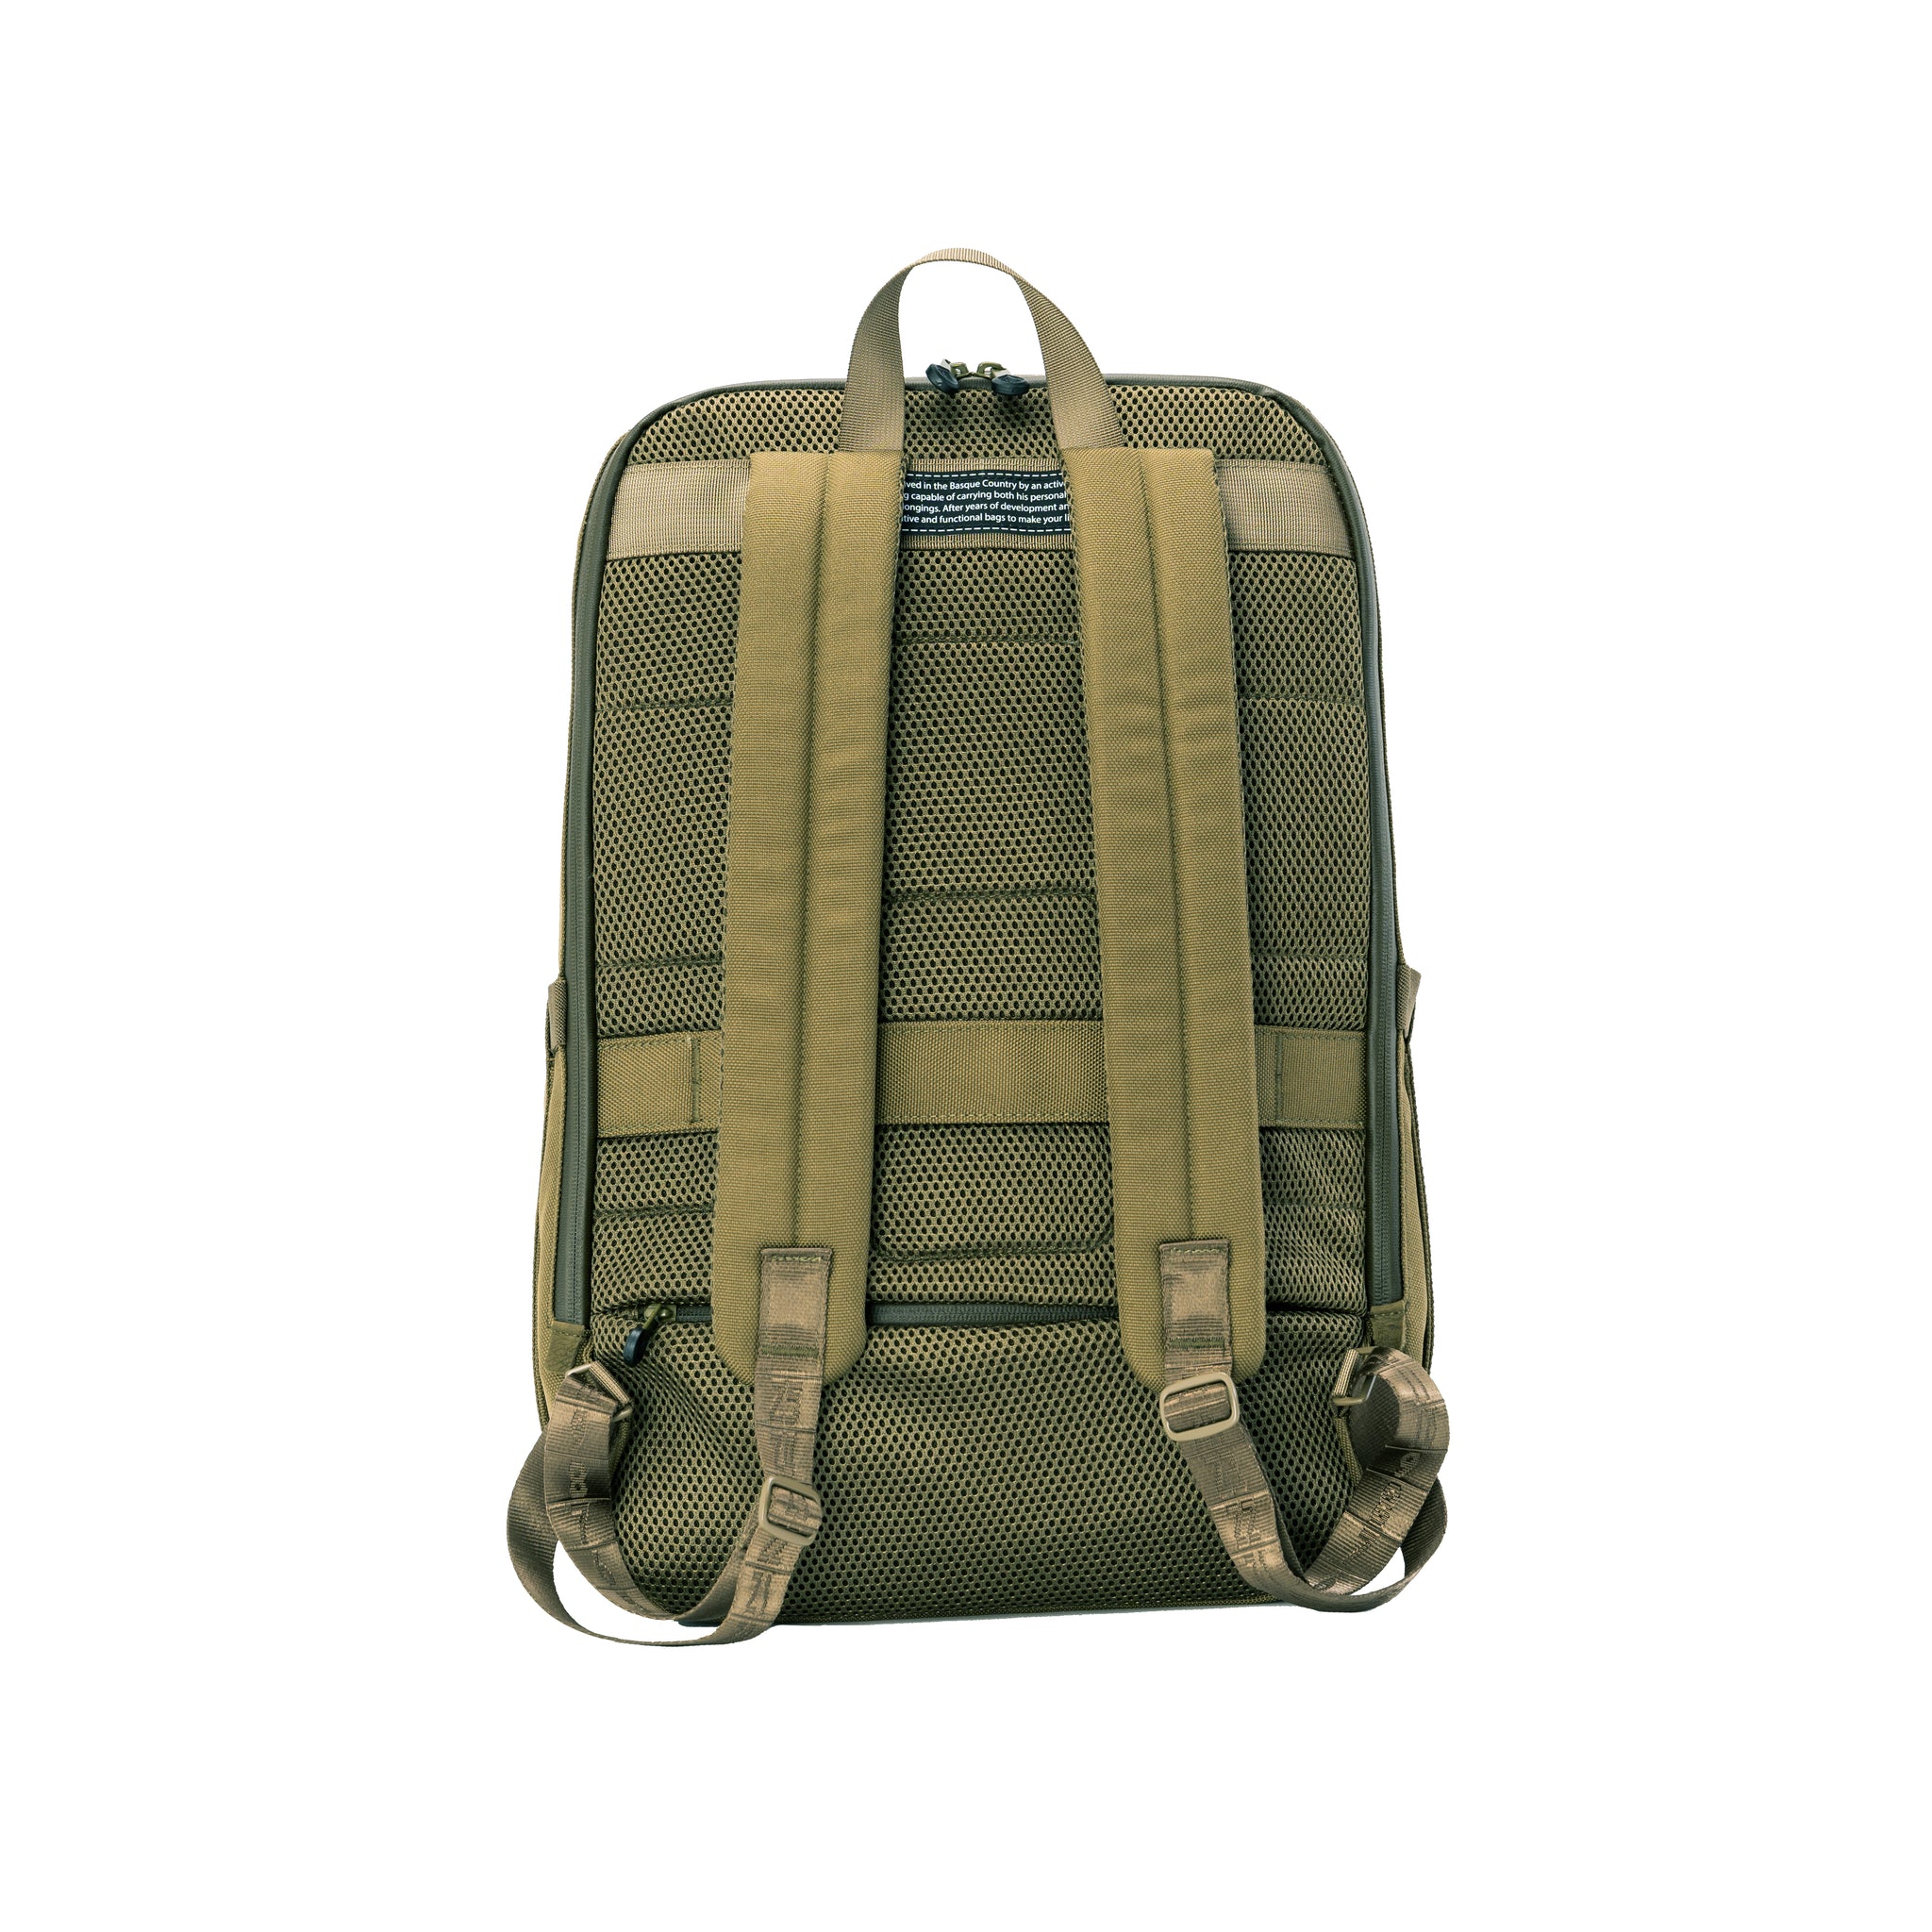 多功能用途 (恆常版) - Bibi 背包 - 橄欖綠